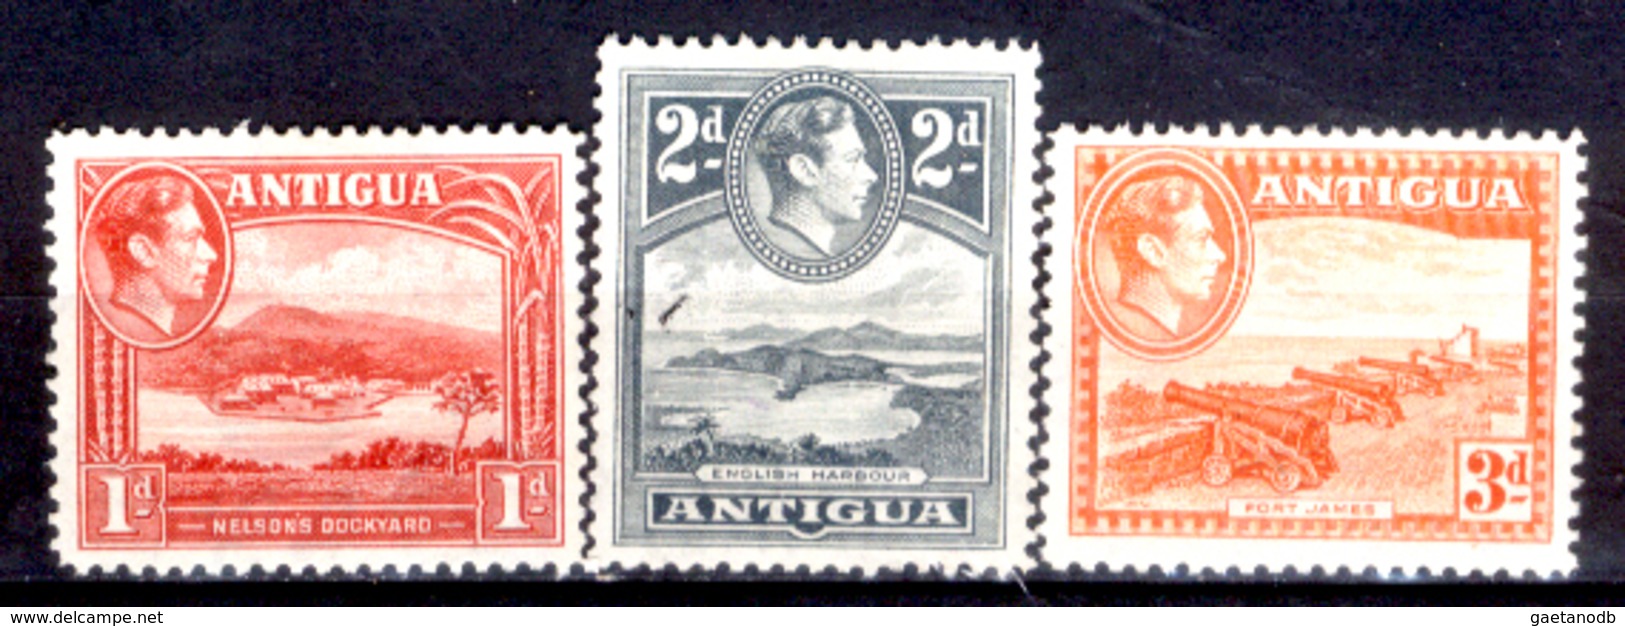 Antigua-015 - Valori Emessi Nel 1938-48 (sg) NG - Privi Di Difetti Occulti. - Antigua E Barbuda (1981-...)